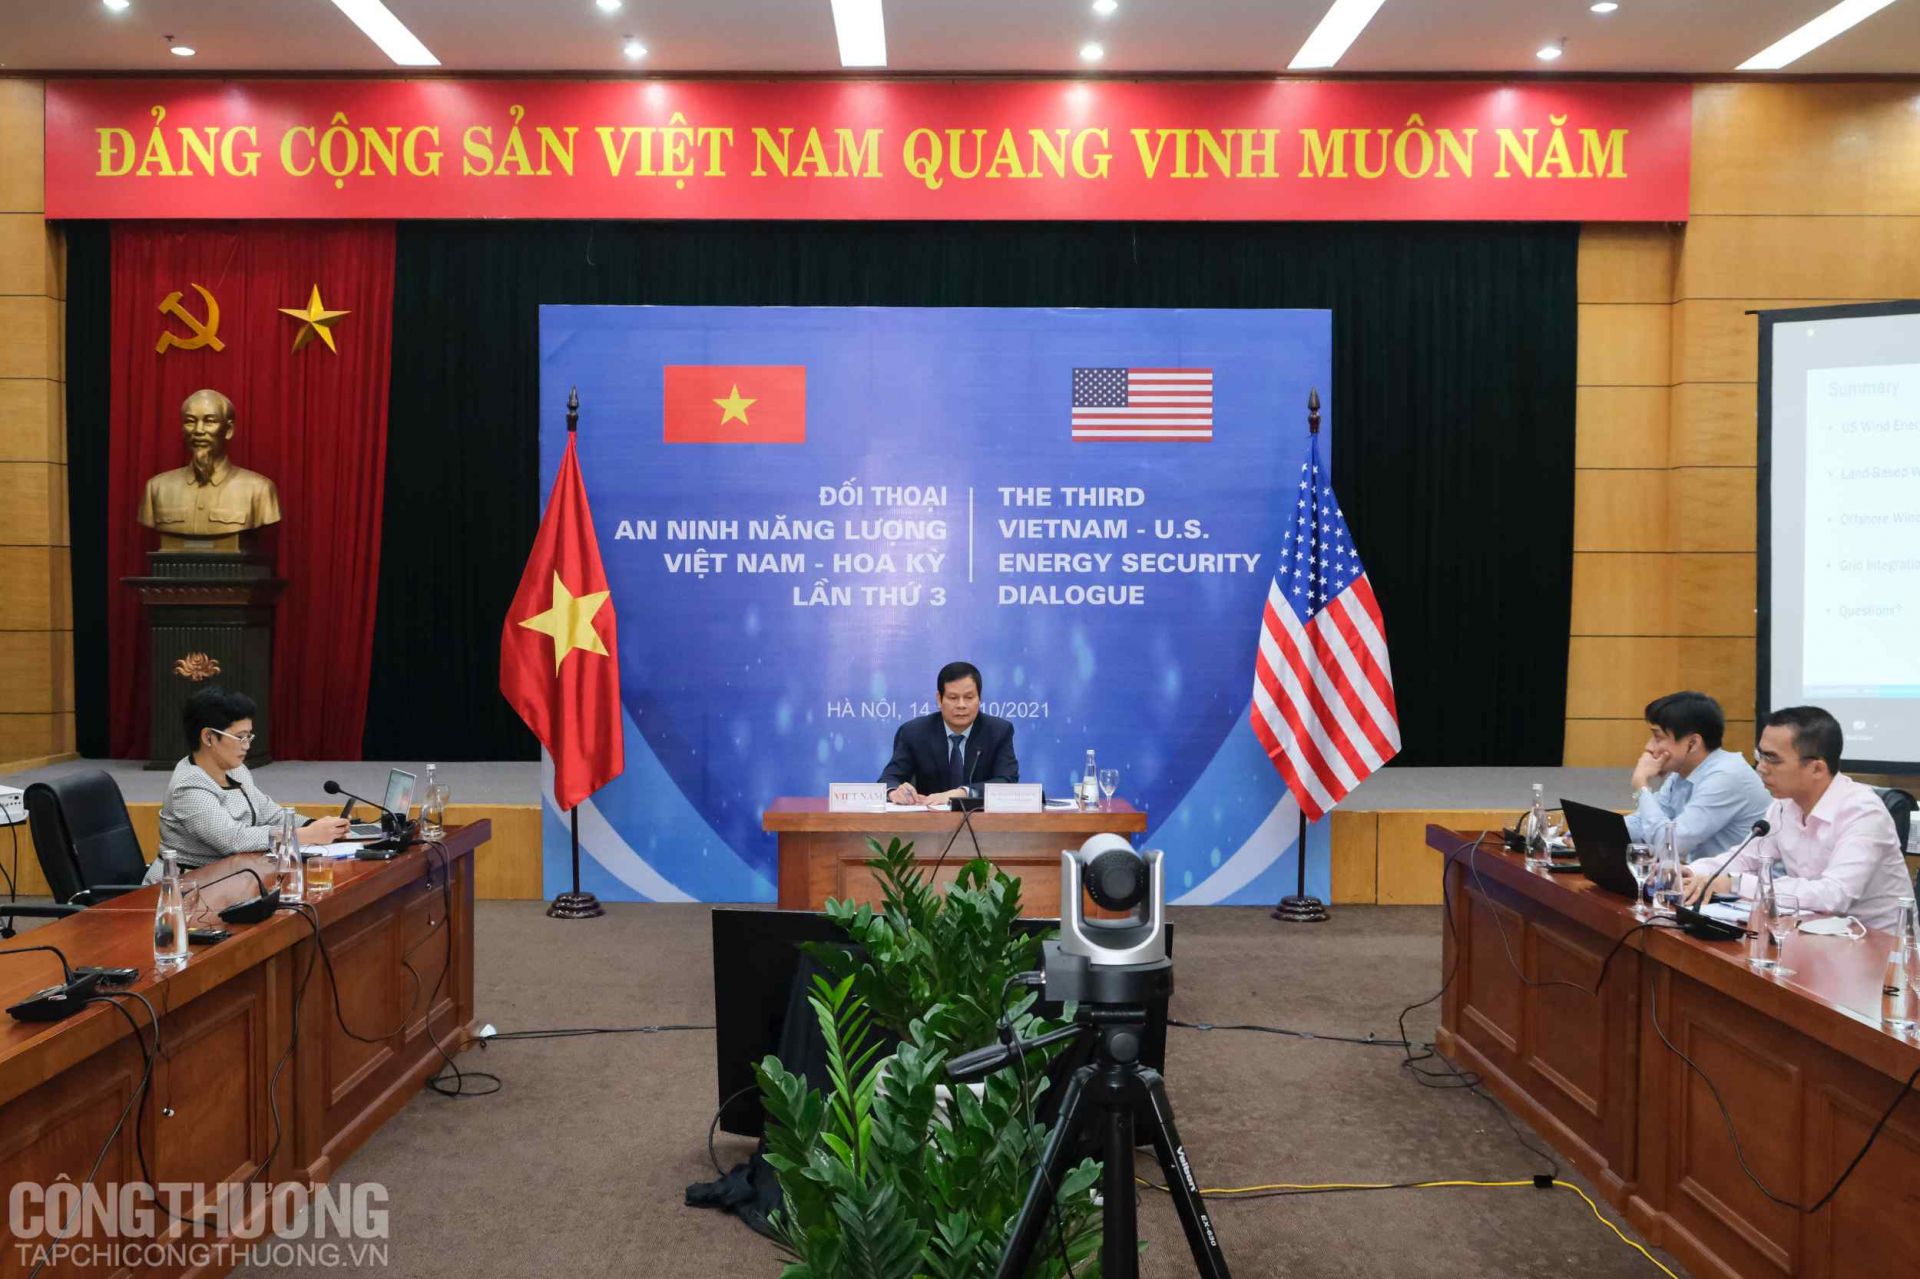 Đối thoại An ninh năng lượng Việt Nam - Hoa Kỳ lần thứ 3 được tổ chức theo hình thức trực tuyến